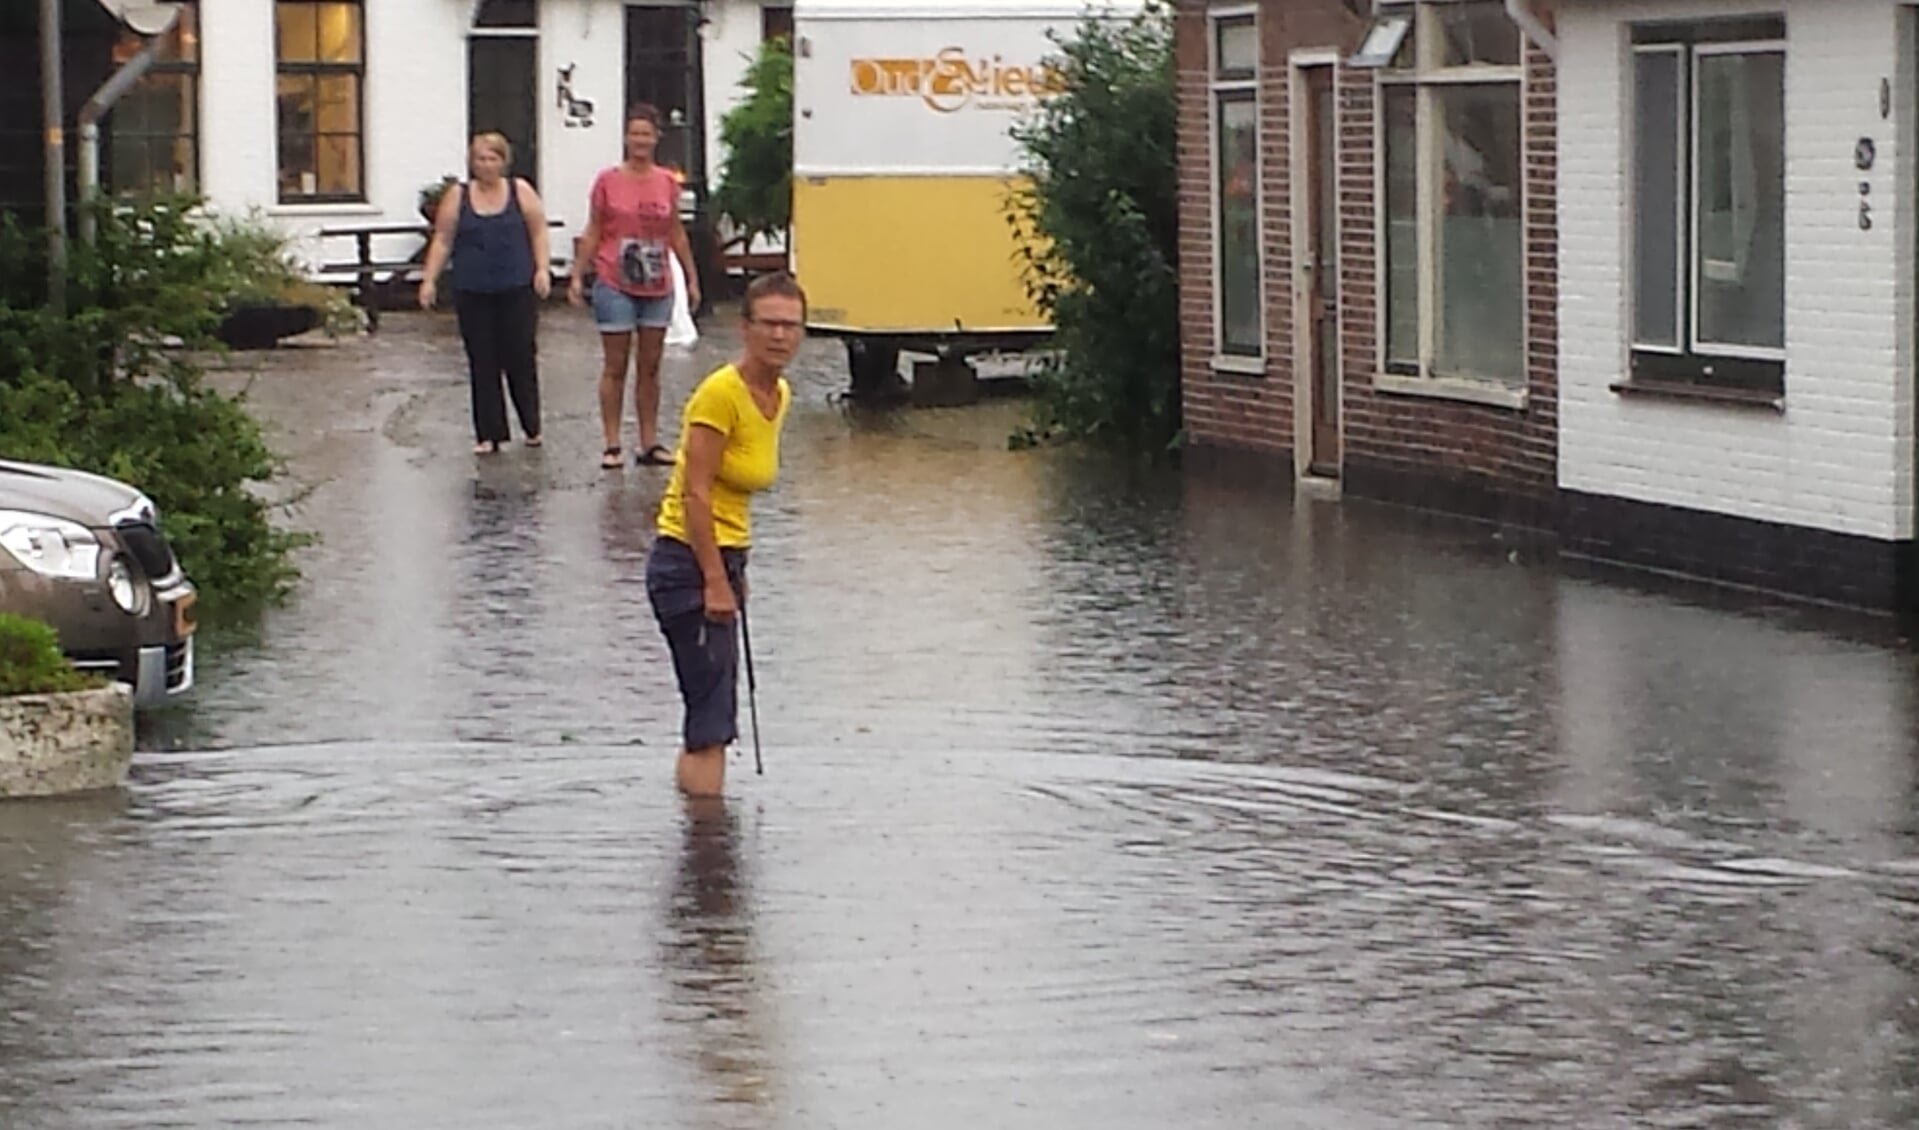 Wateroverlast in Oosterend als gevolg van de regen. (Foto Richard van der Vis)